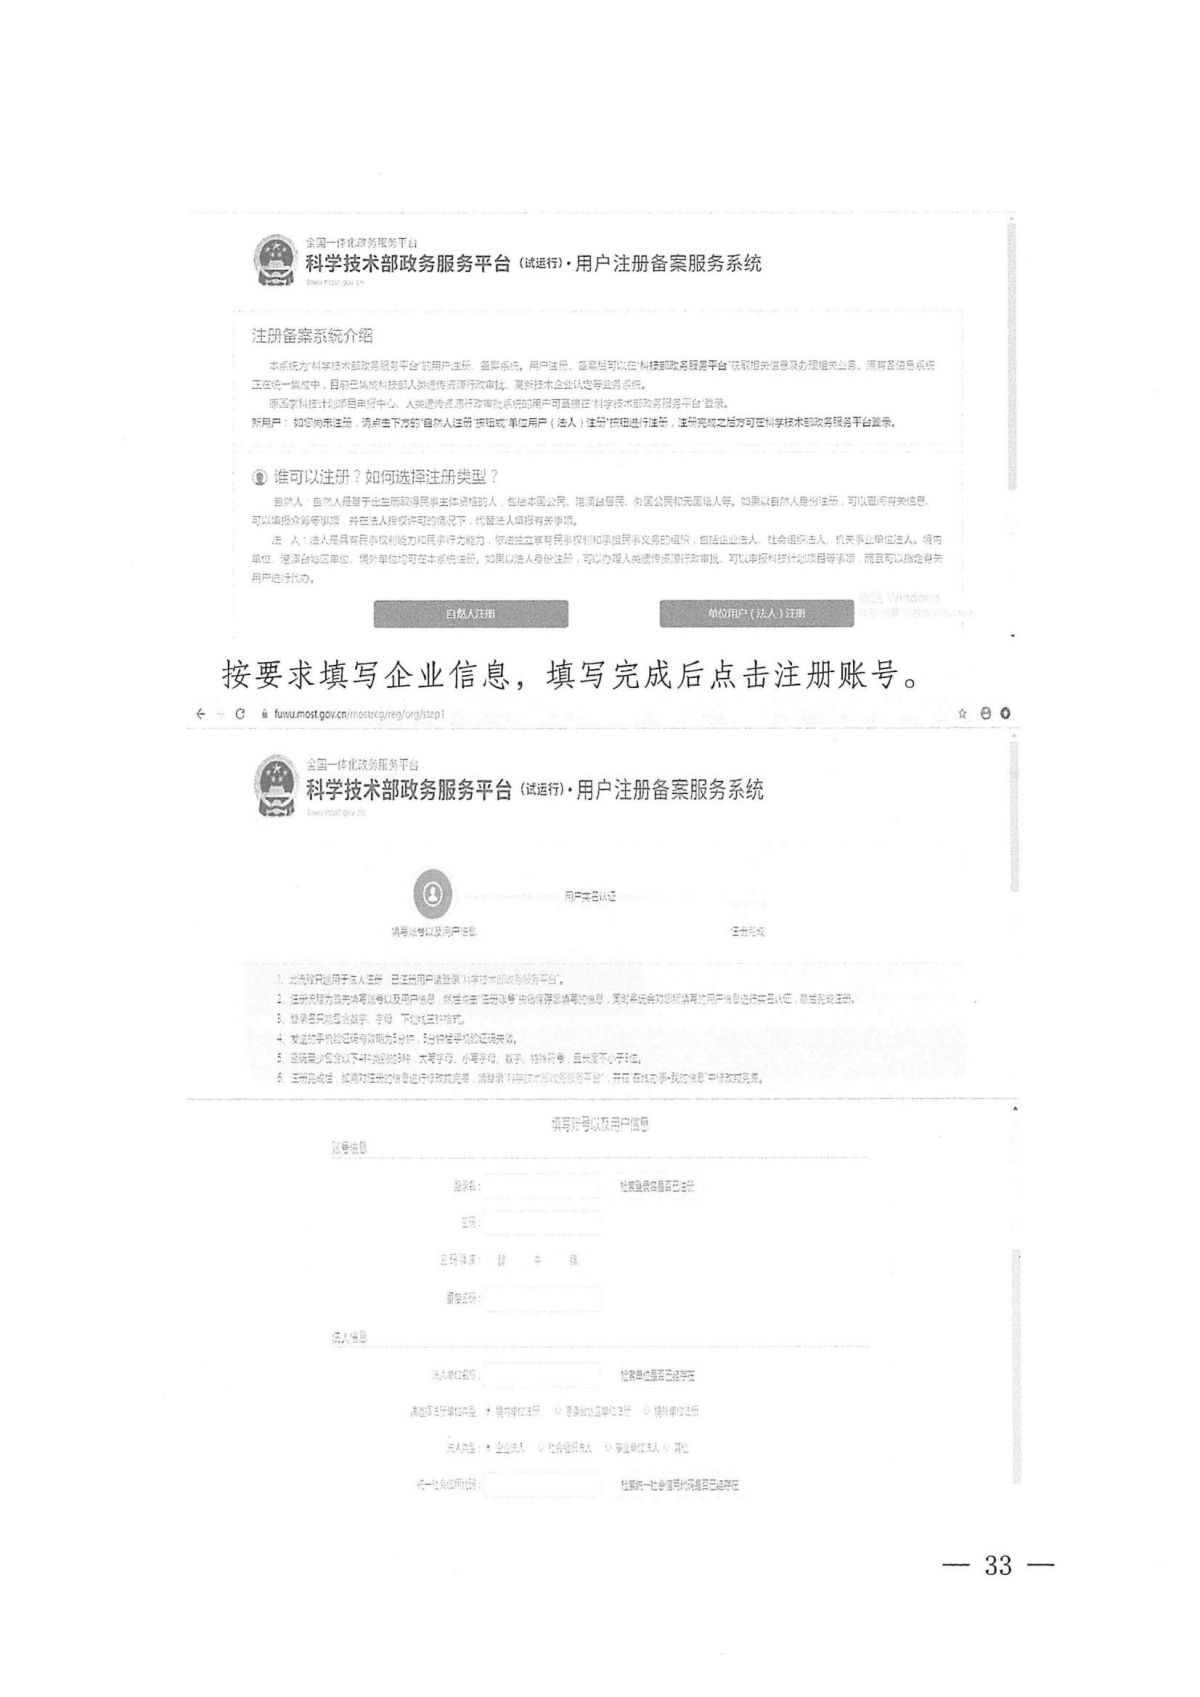 附件1：关于云南省2024年高新技术企业培育认定工作有关事项的通知_32.jpg